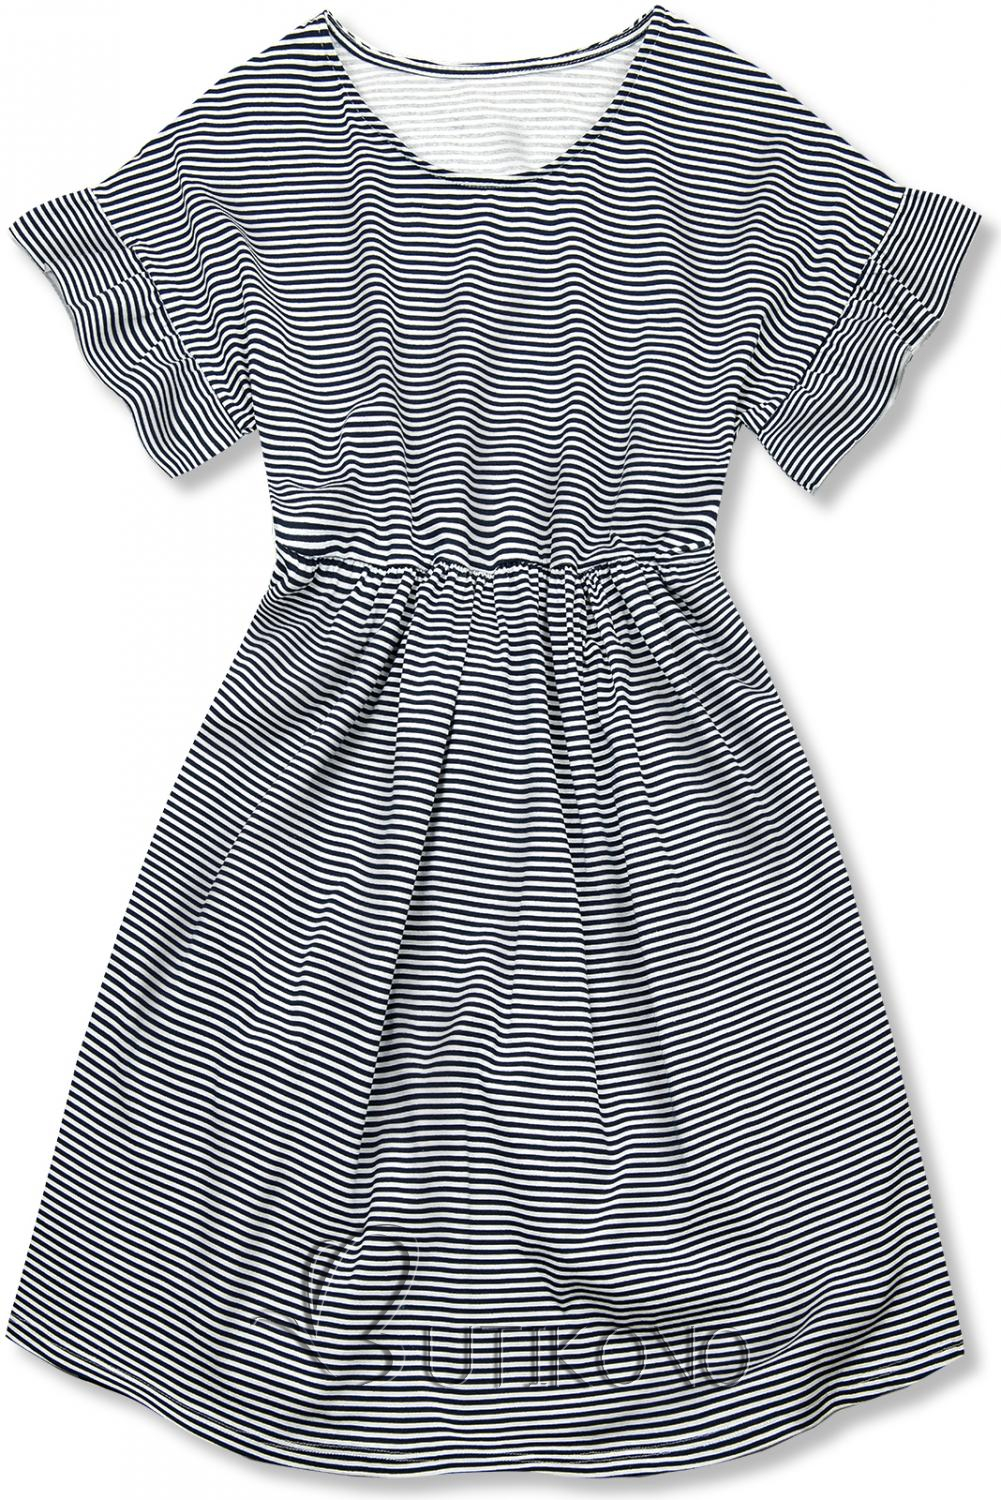 Modro-biele voľné pruhované šaty IV.